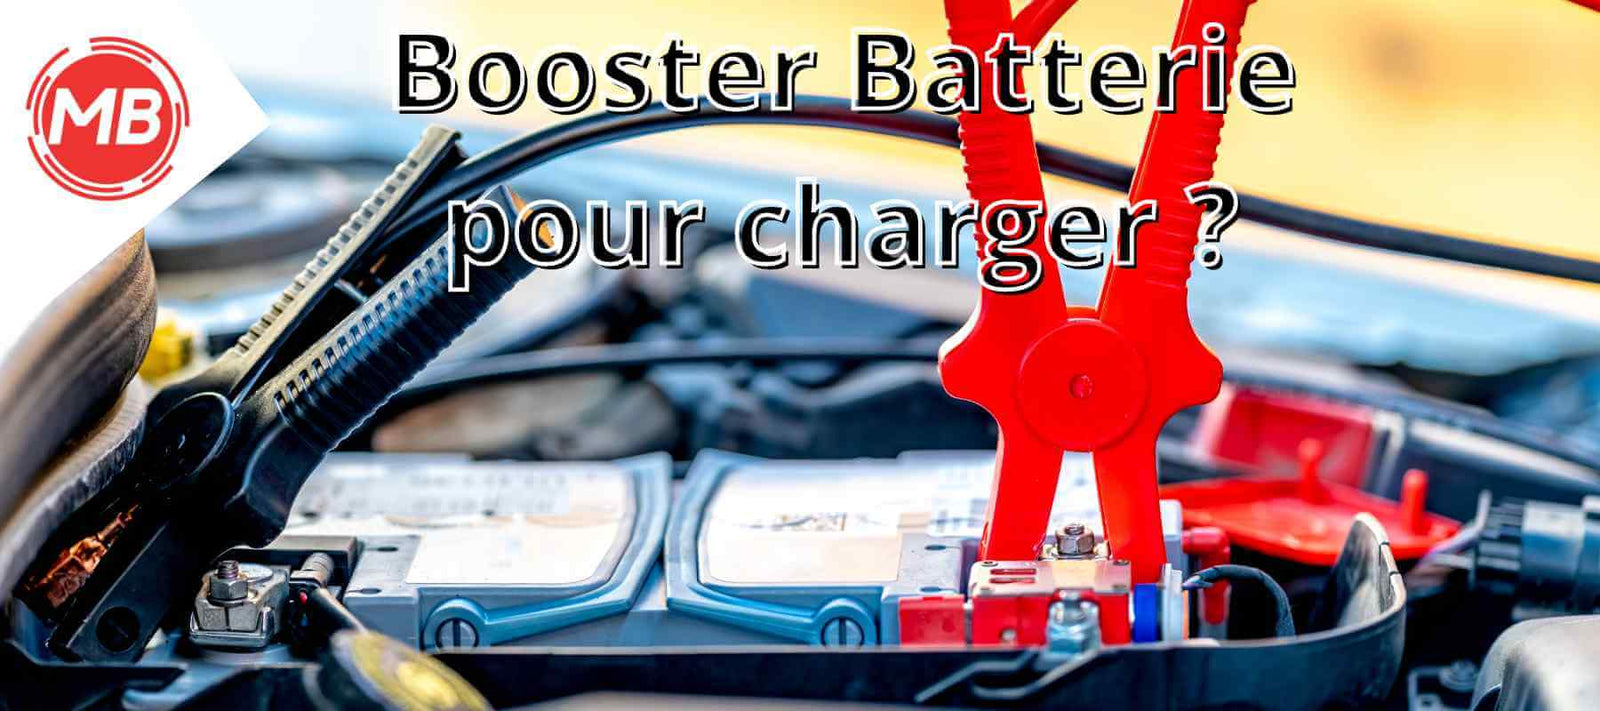 Comment fonctionne un booster de batterie ?